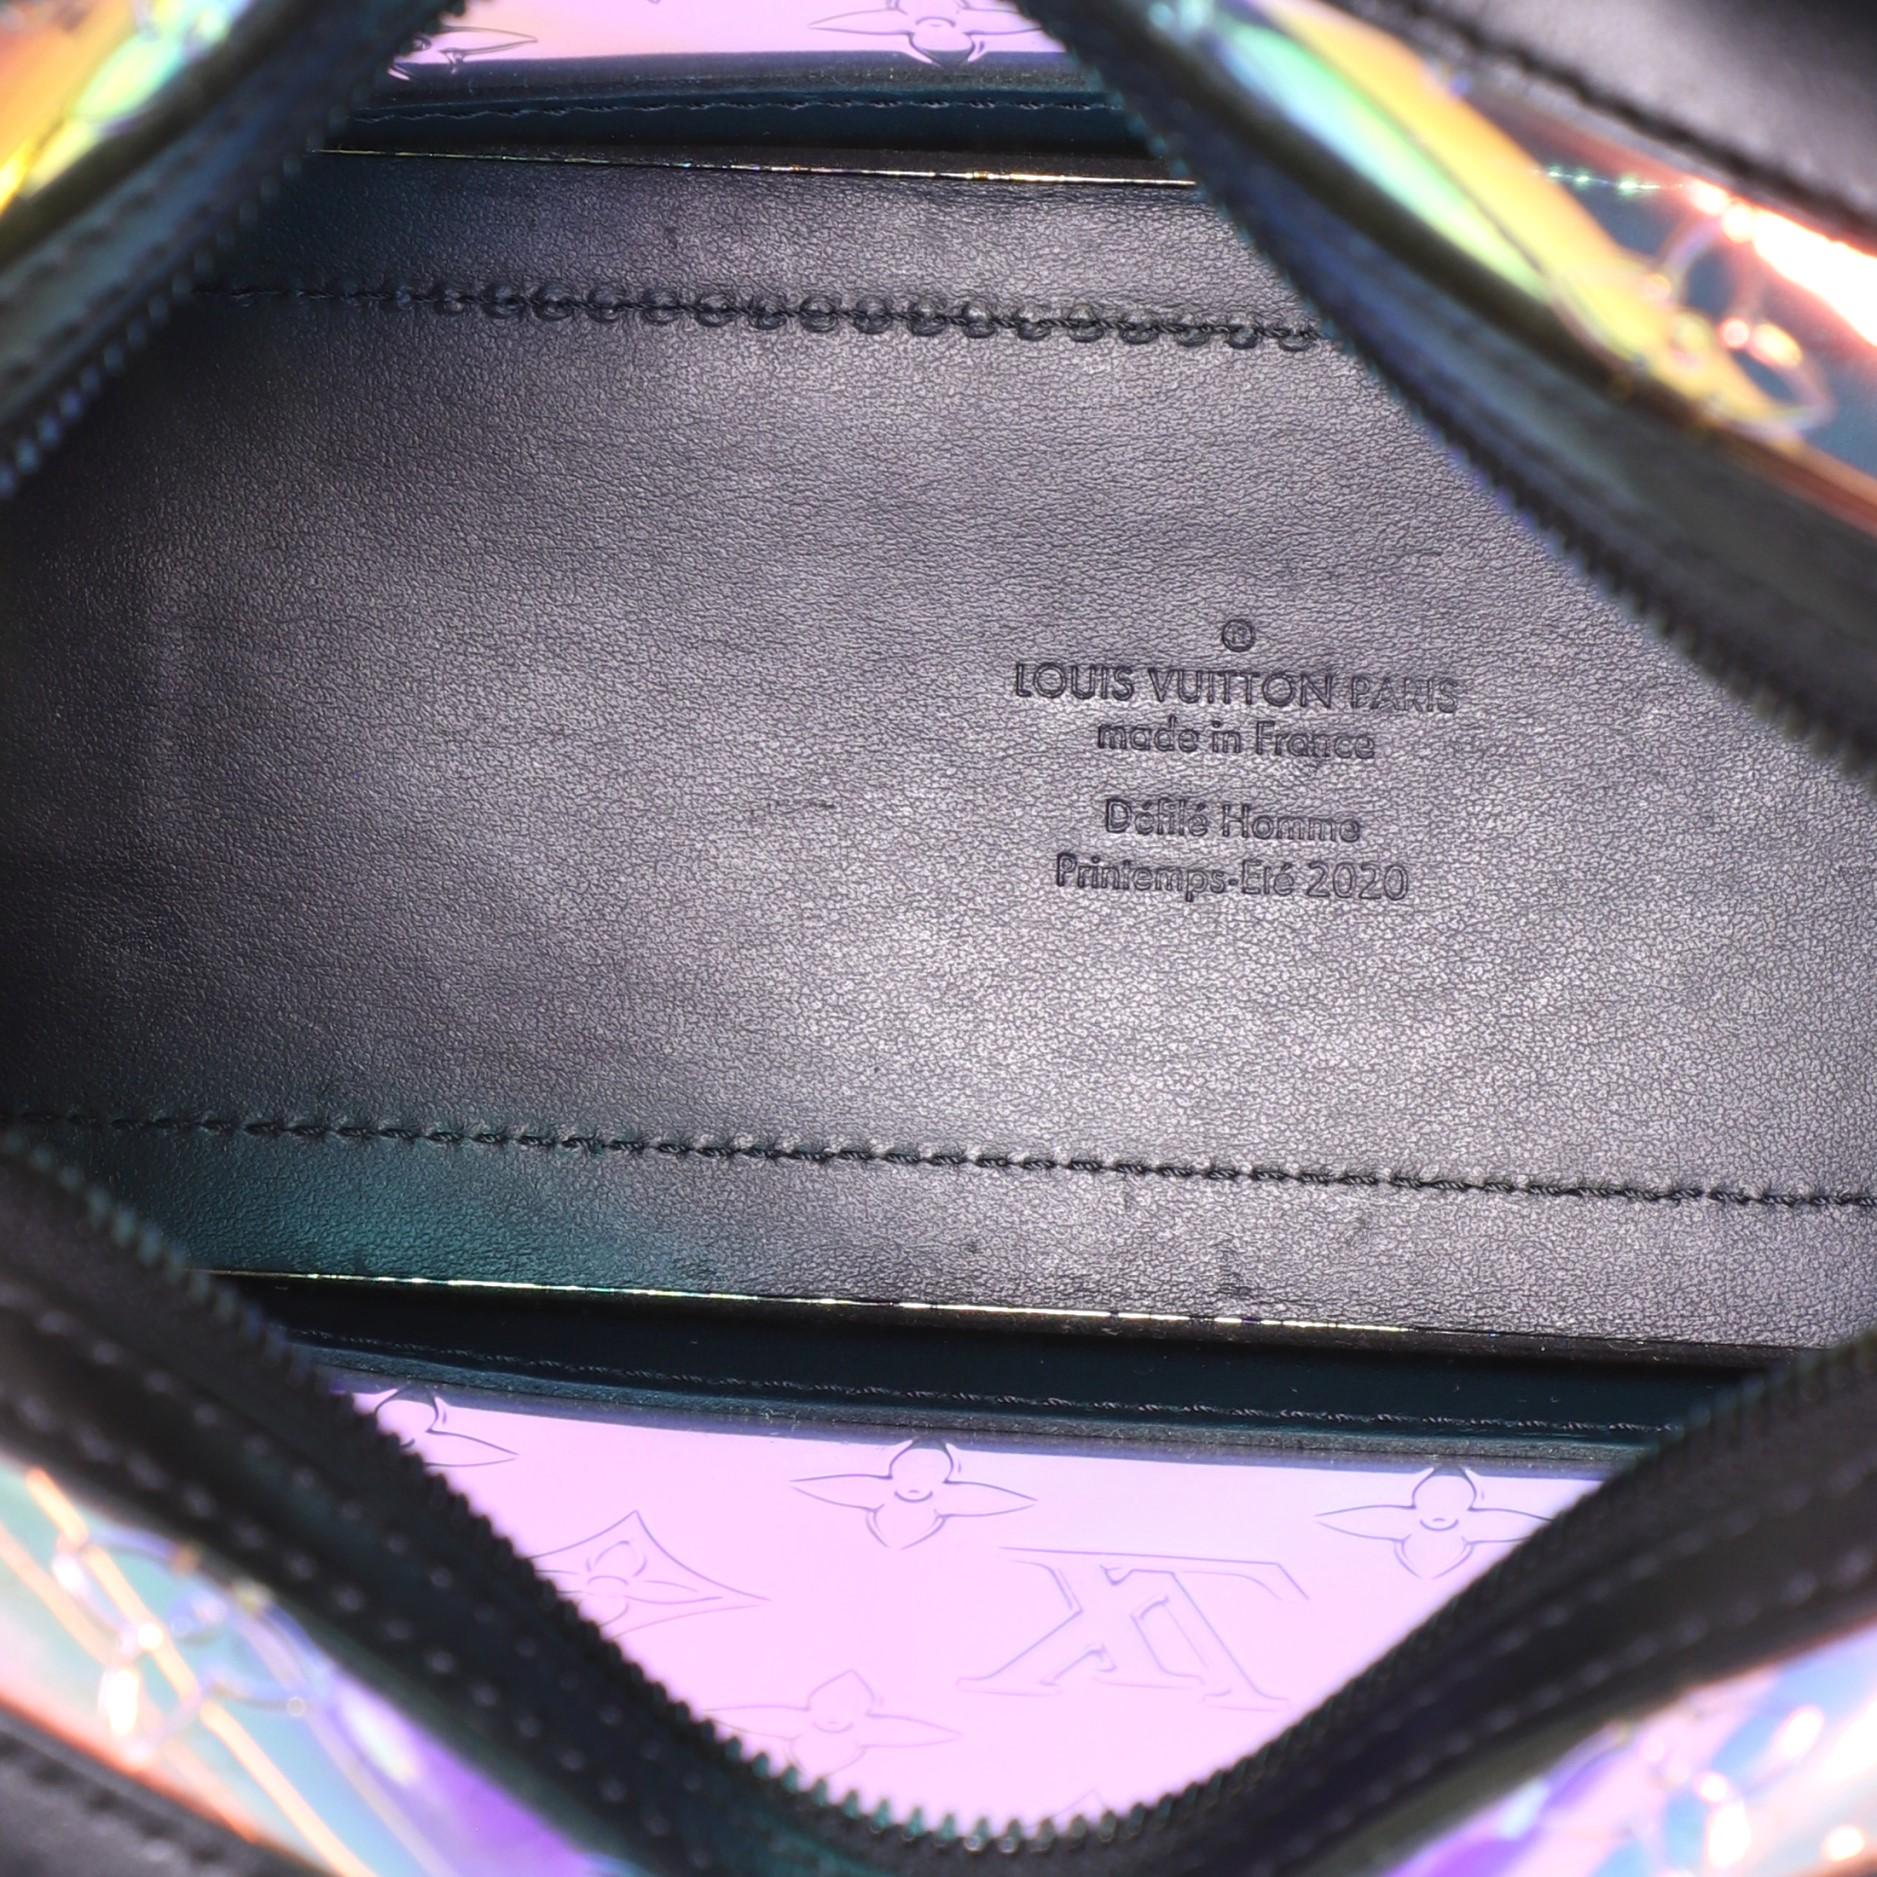 Women's or Men's Louis Vuitton Soft Trunk Bag Limited Edition Dark Monogram Prism PVC